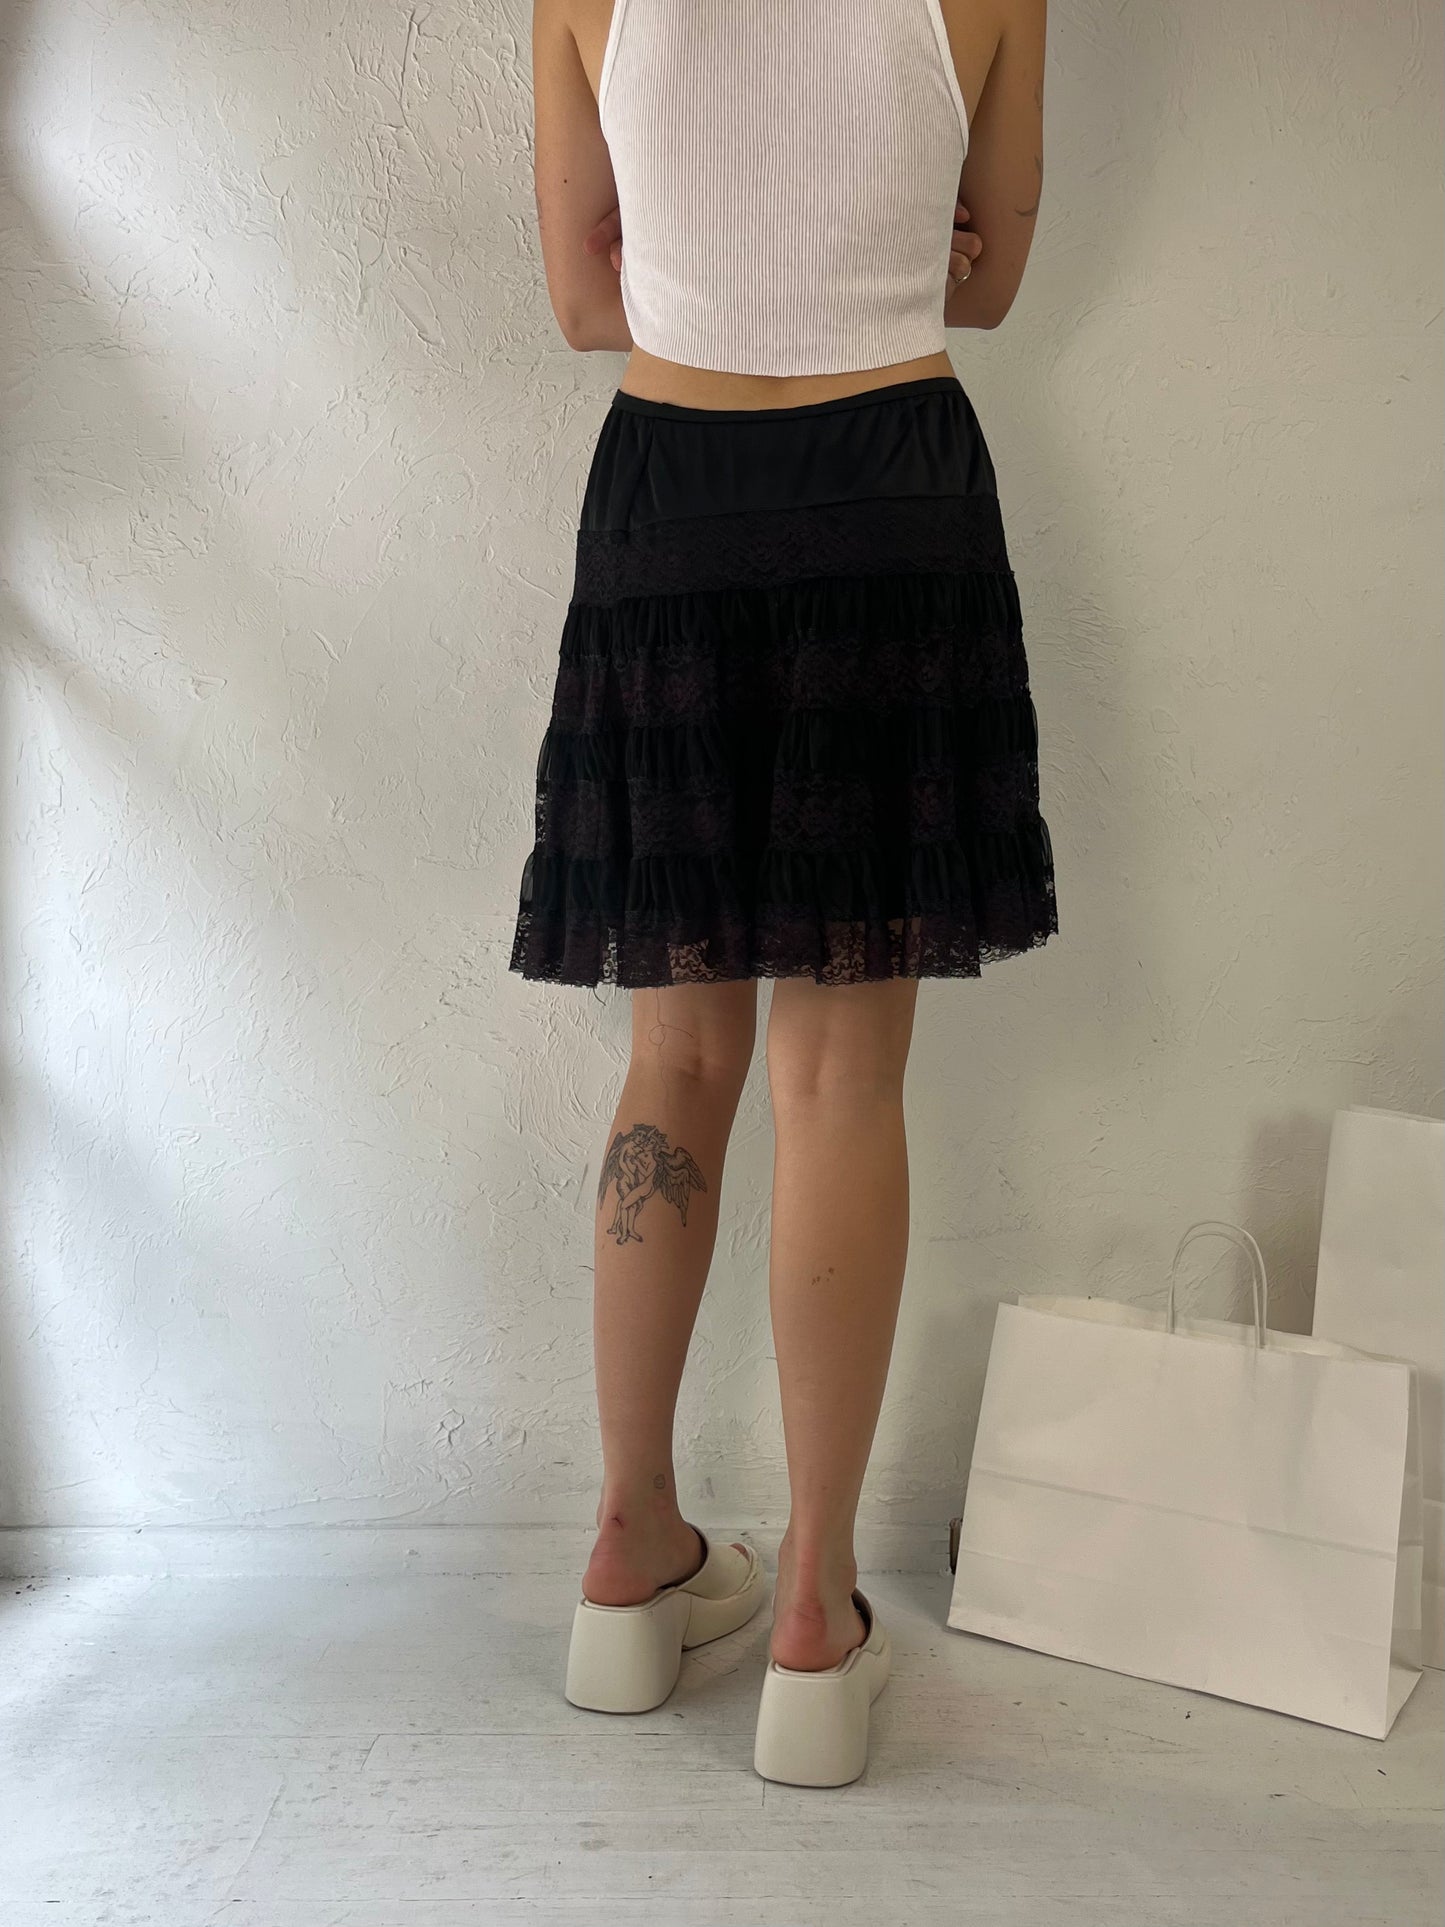 90s 'Caresse Lingerie' Black Lace Ruffle Lingerie Mini Skirt / Medium